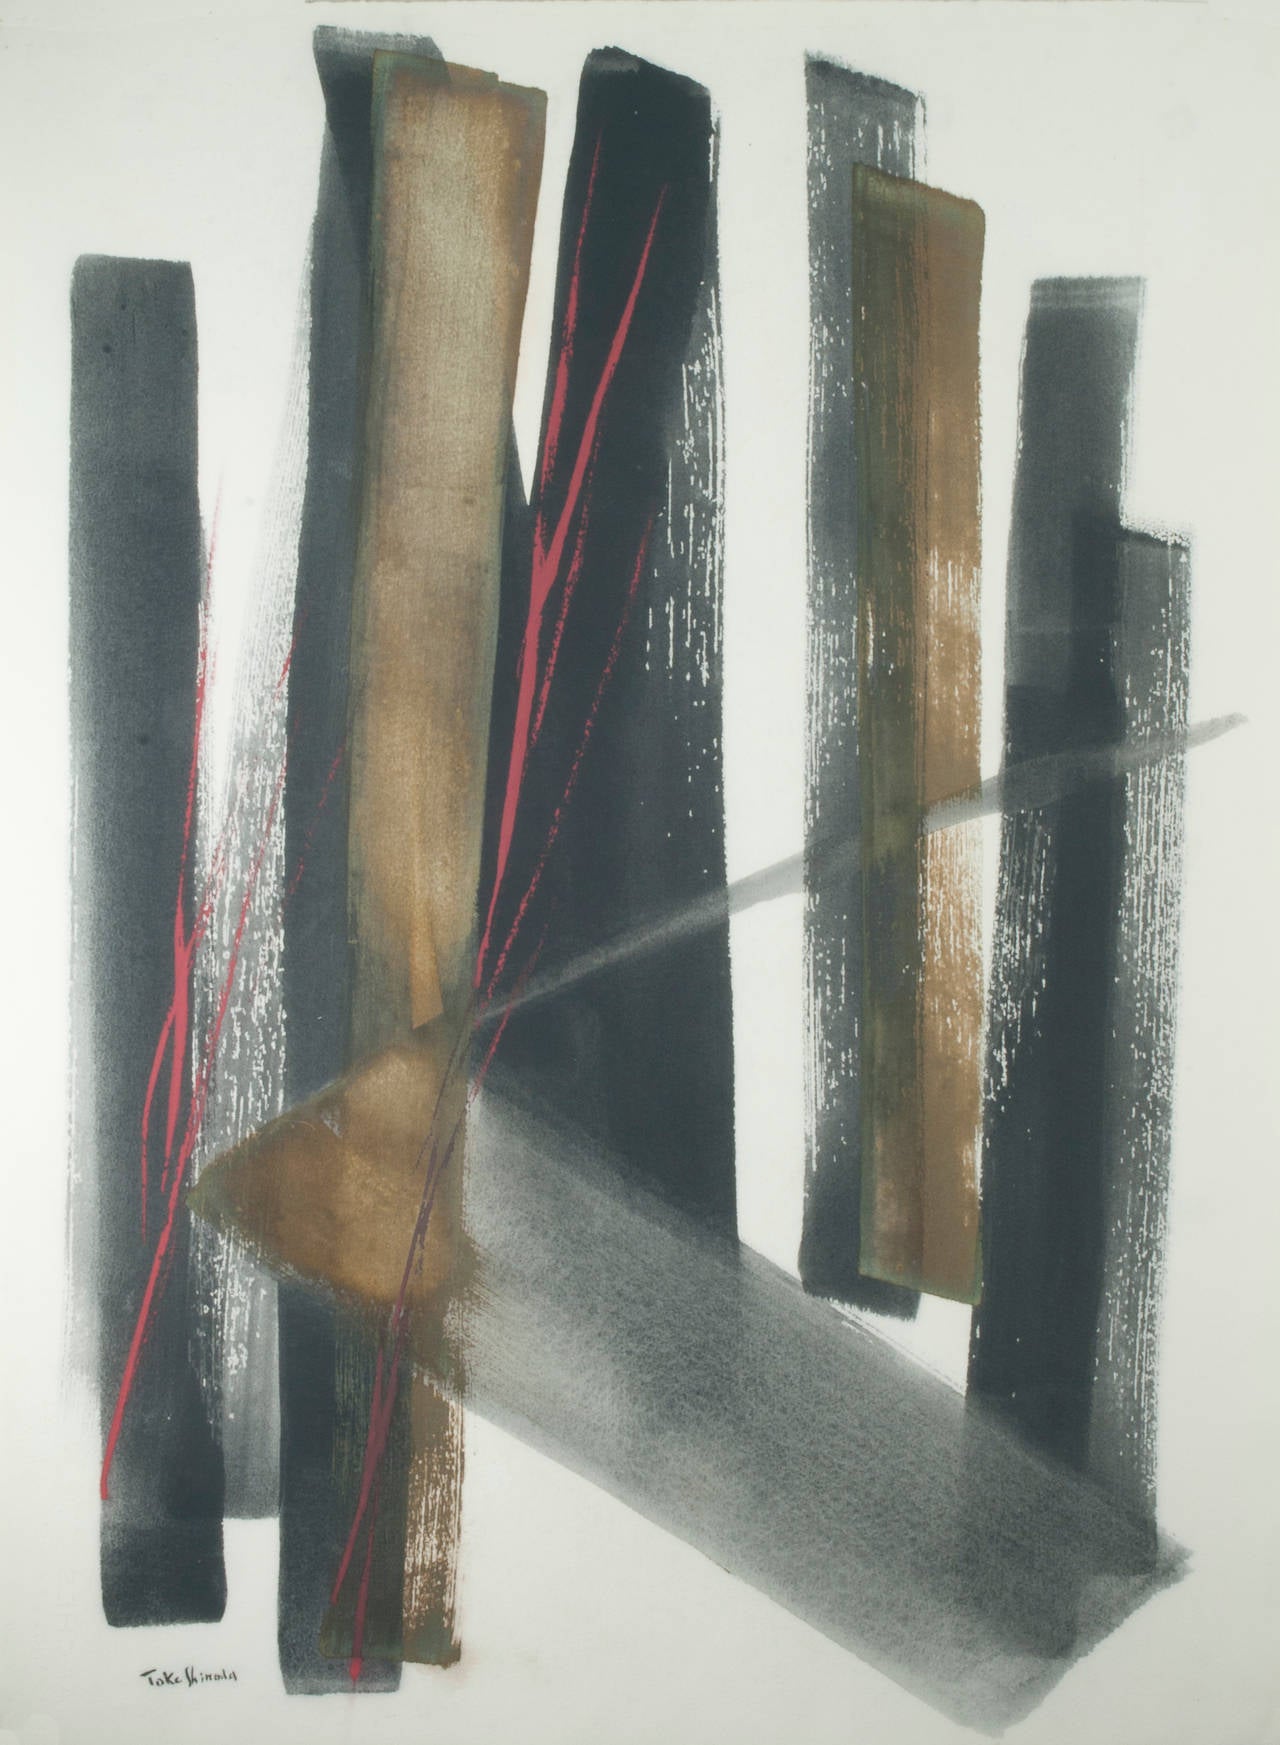 Toko Shinoda Abstract Drawing - Untitled